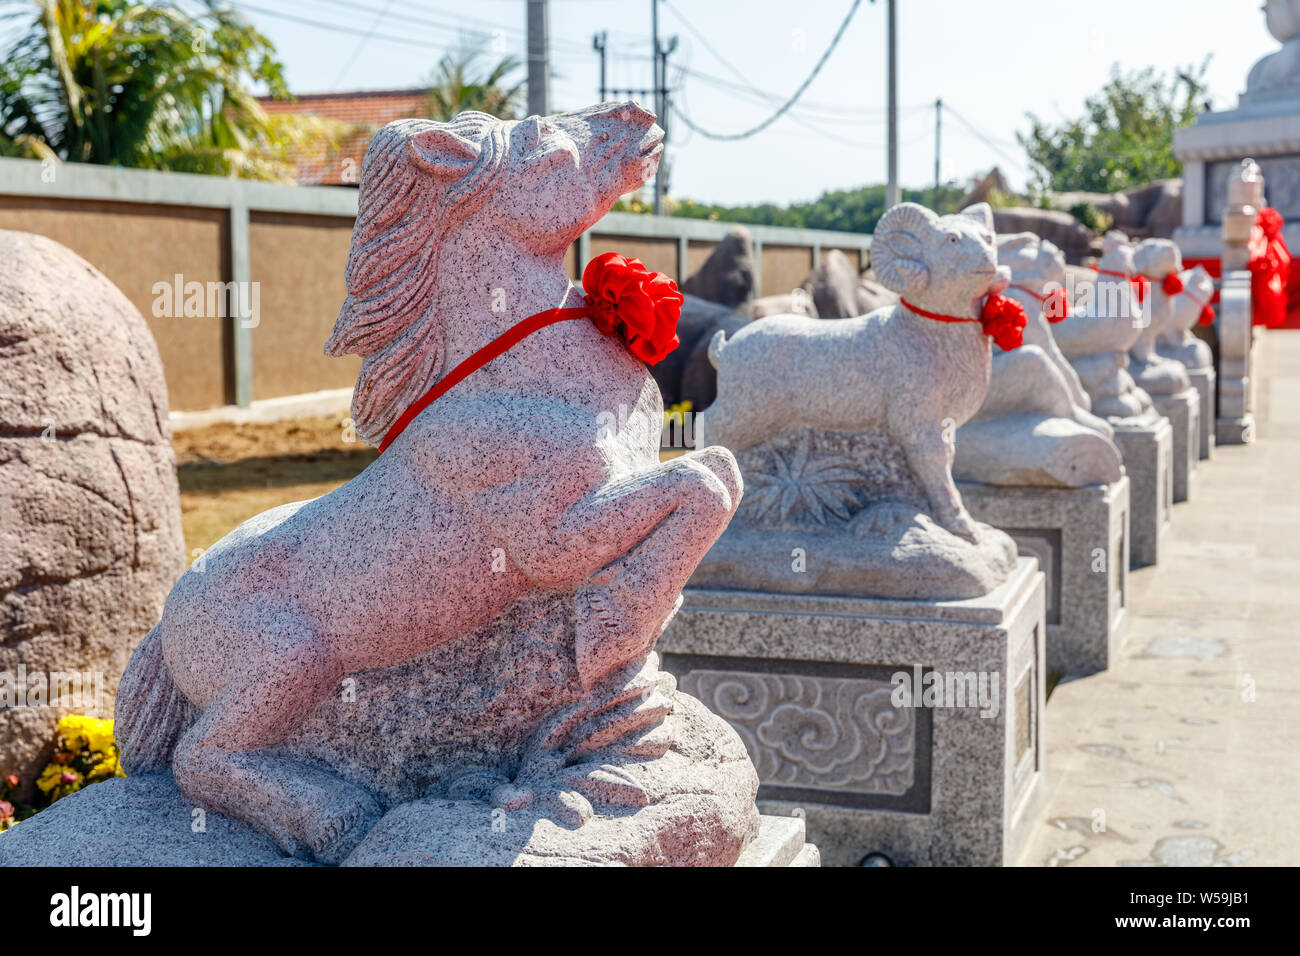 Pferd, Ram und andere Tiere des chinesischen Kalenders Vihara Satya Dharma, chinesischen buddhistischen Tempel für tianhou Mazu, Chinesischen Meer Göttin. Benoa, Bali Stockfoto